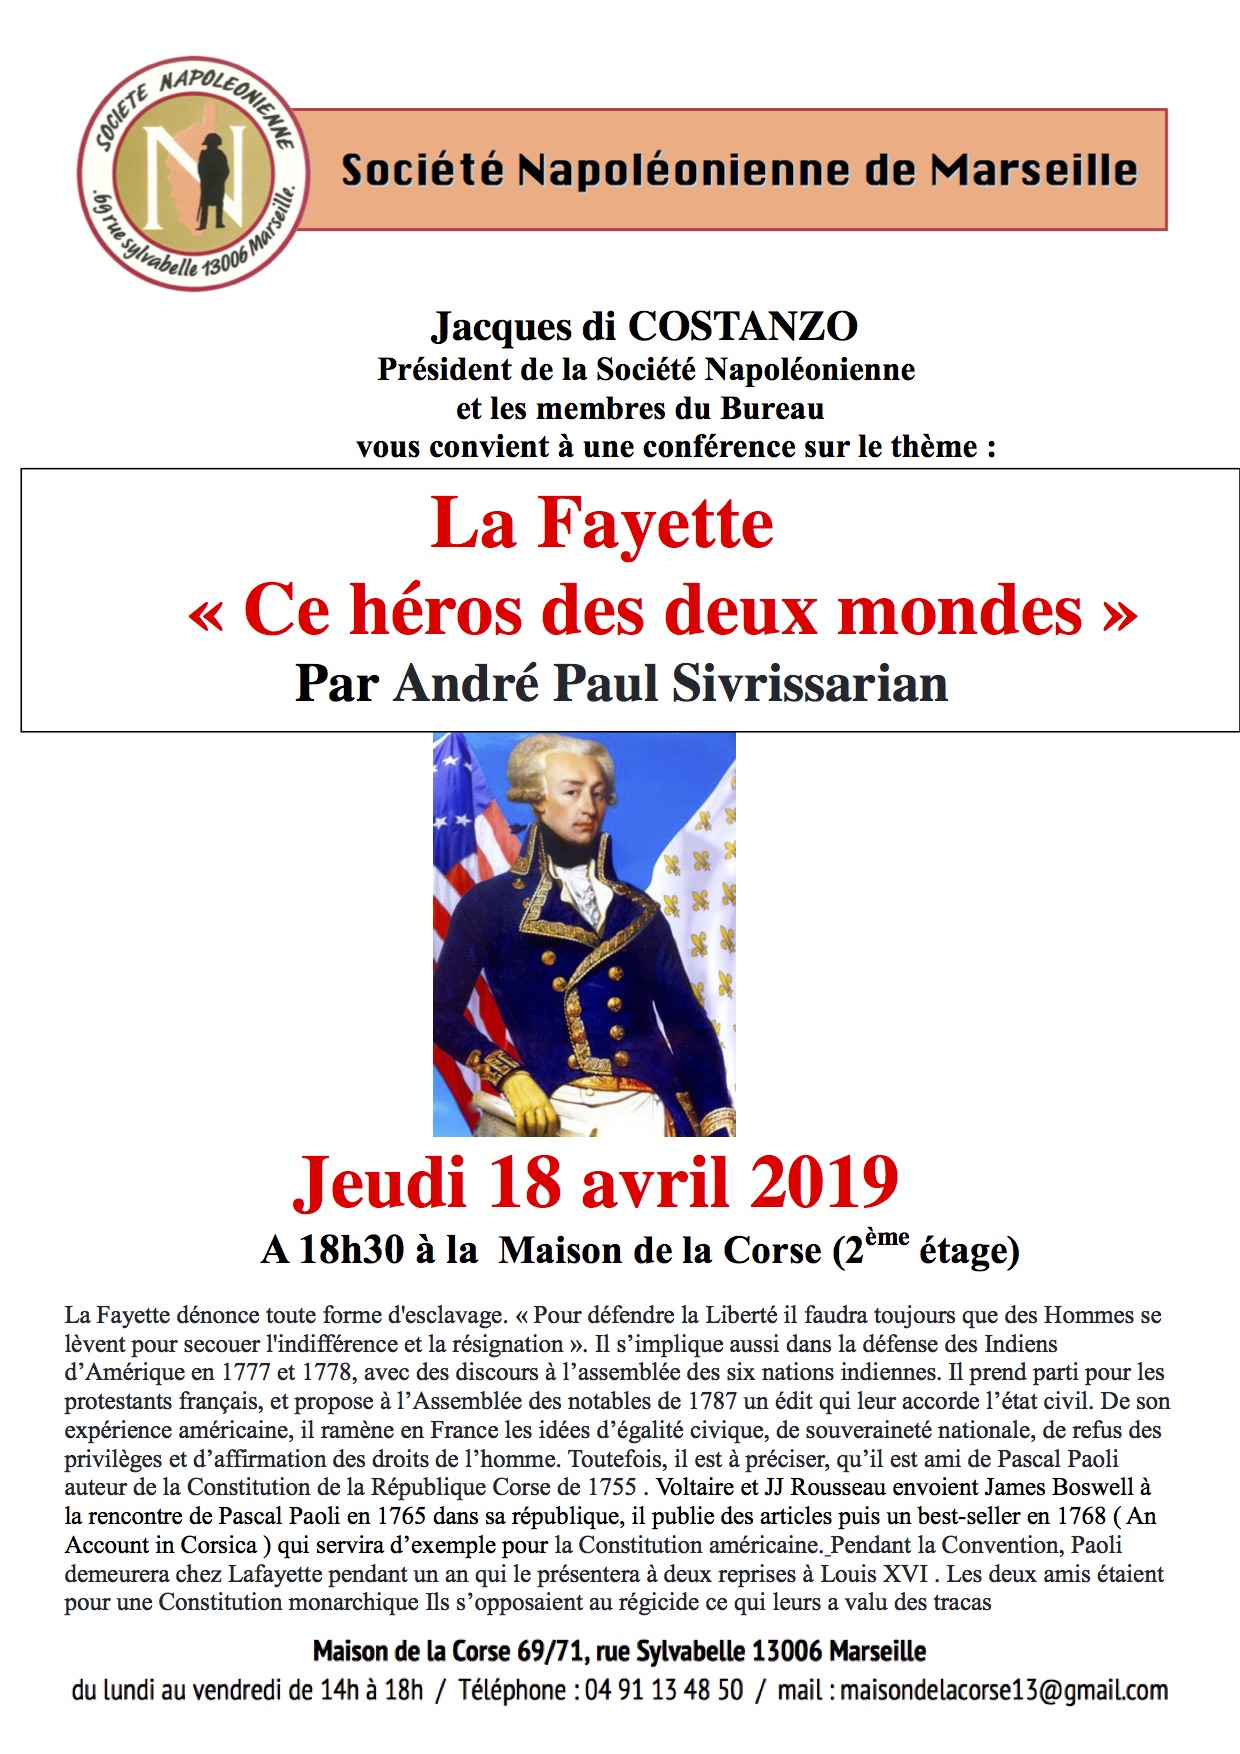 Maison de la Corse. de Marseille et la Société Napoléonienne organisent un séminaire ce 18 avril 2019